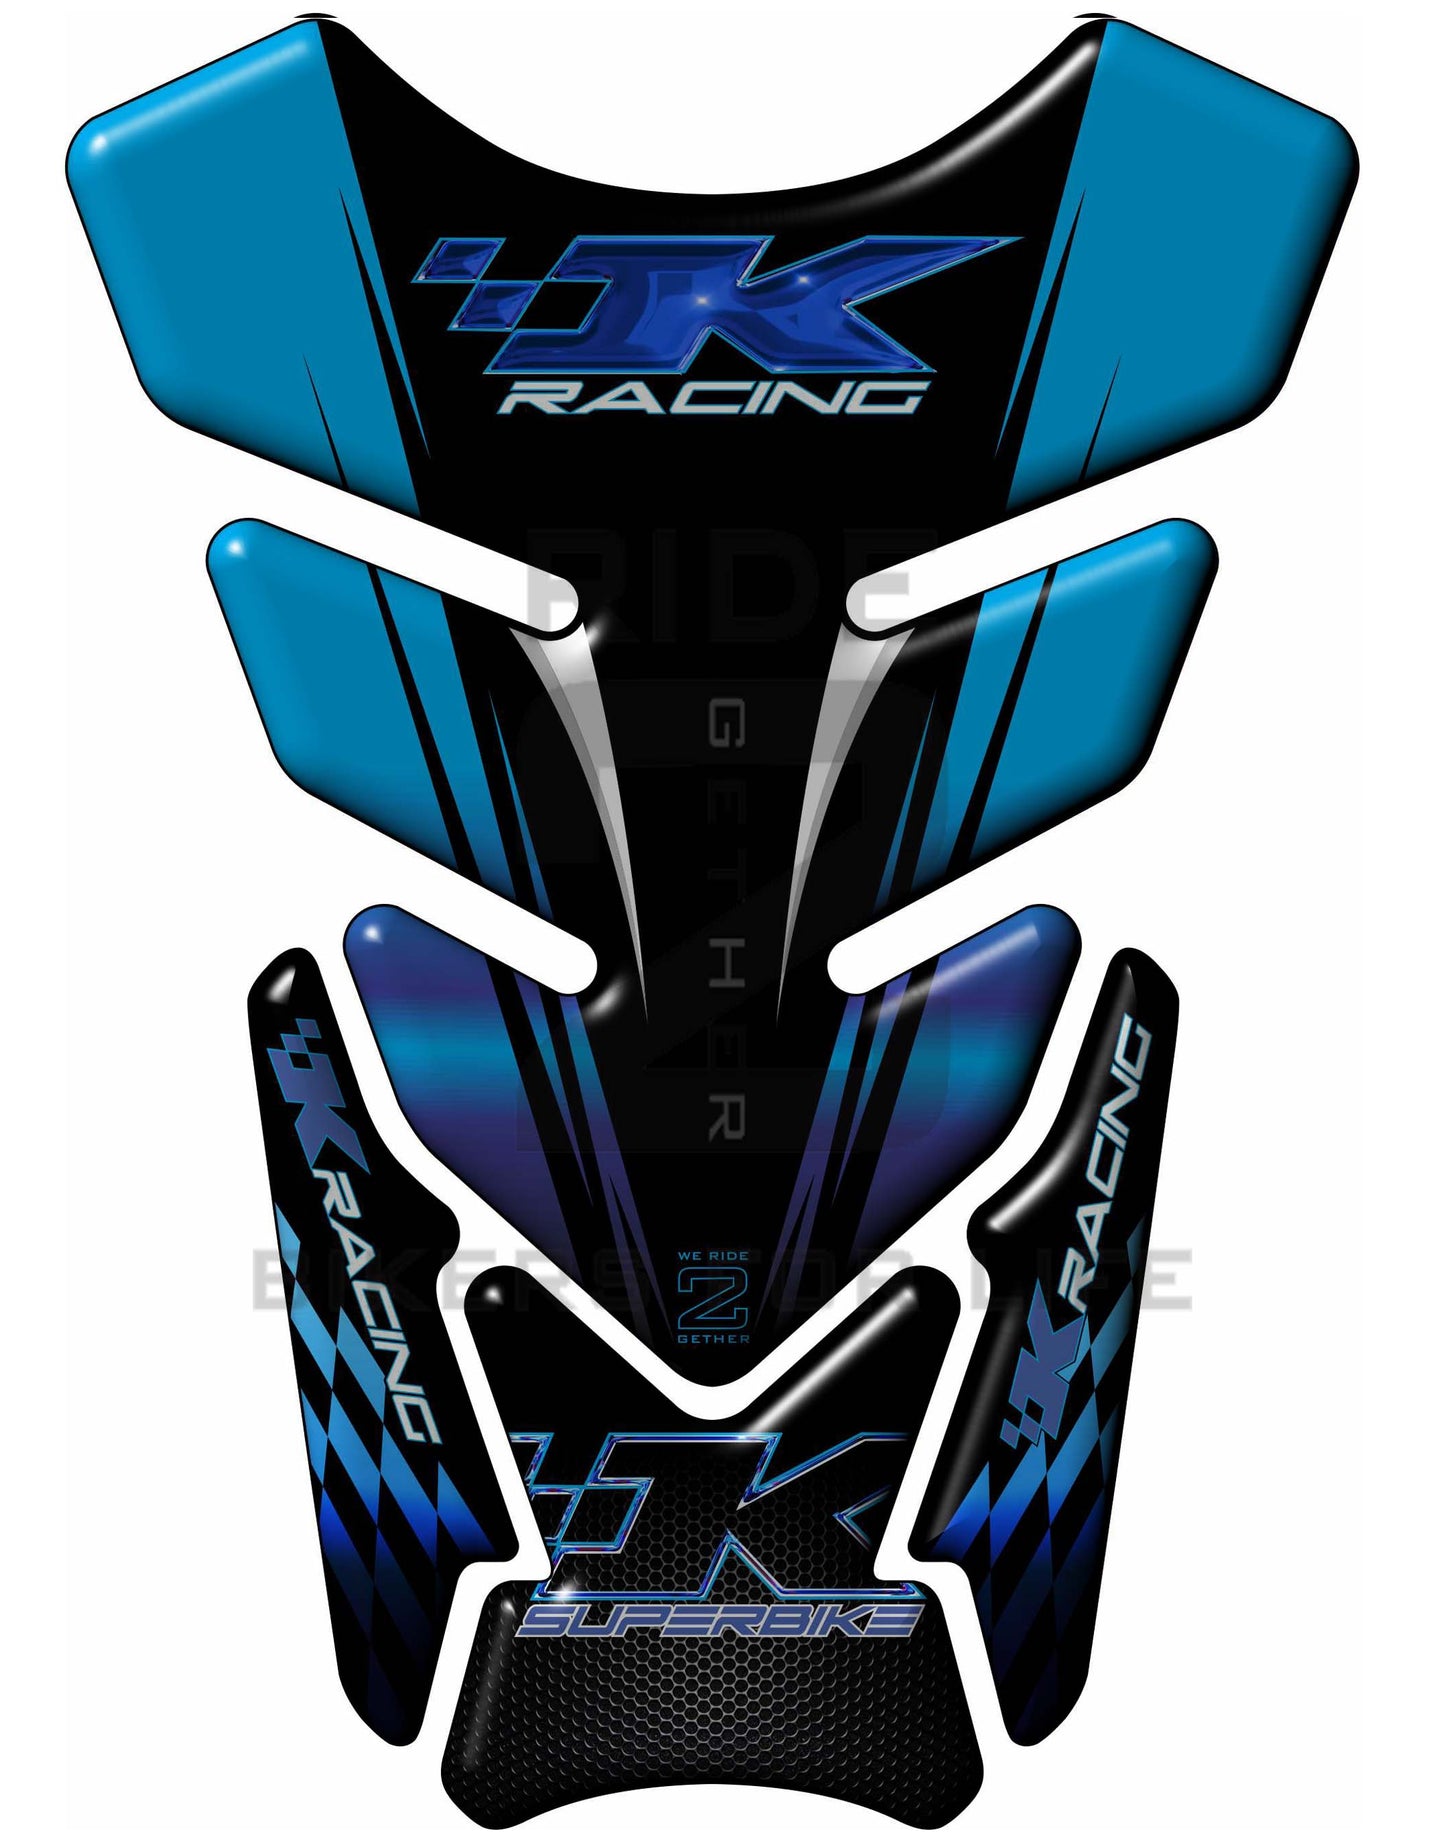 Kawasaki K Racing Blue and Black Tank Pad / Protector